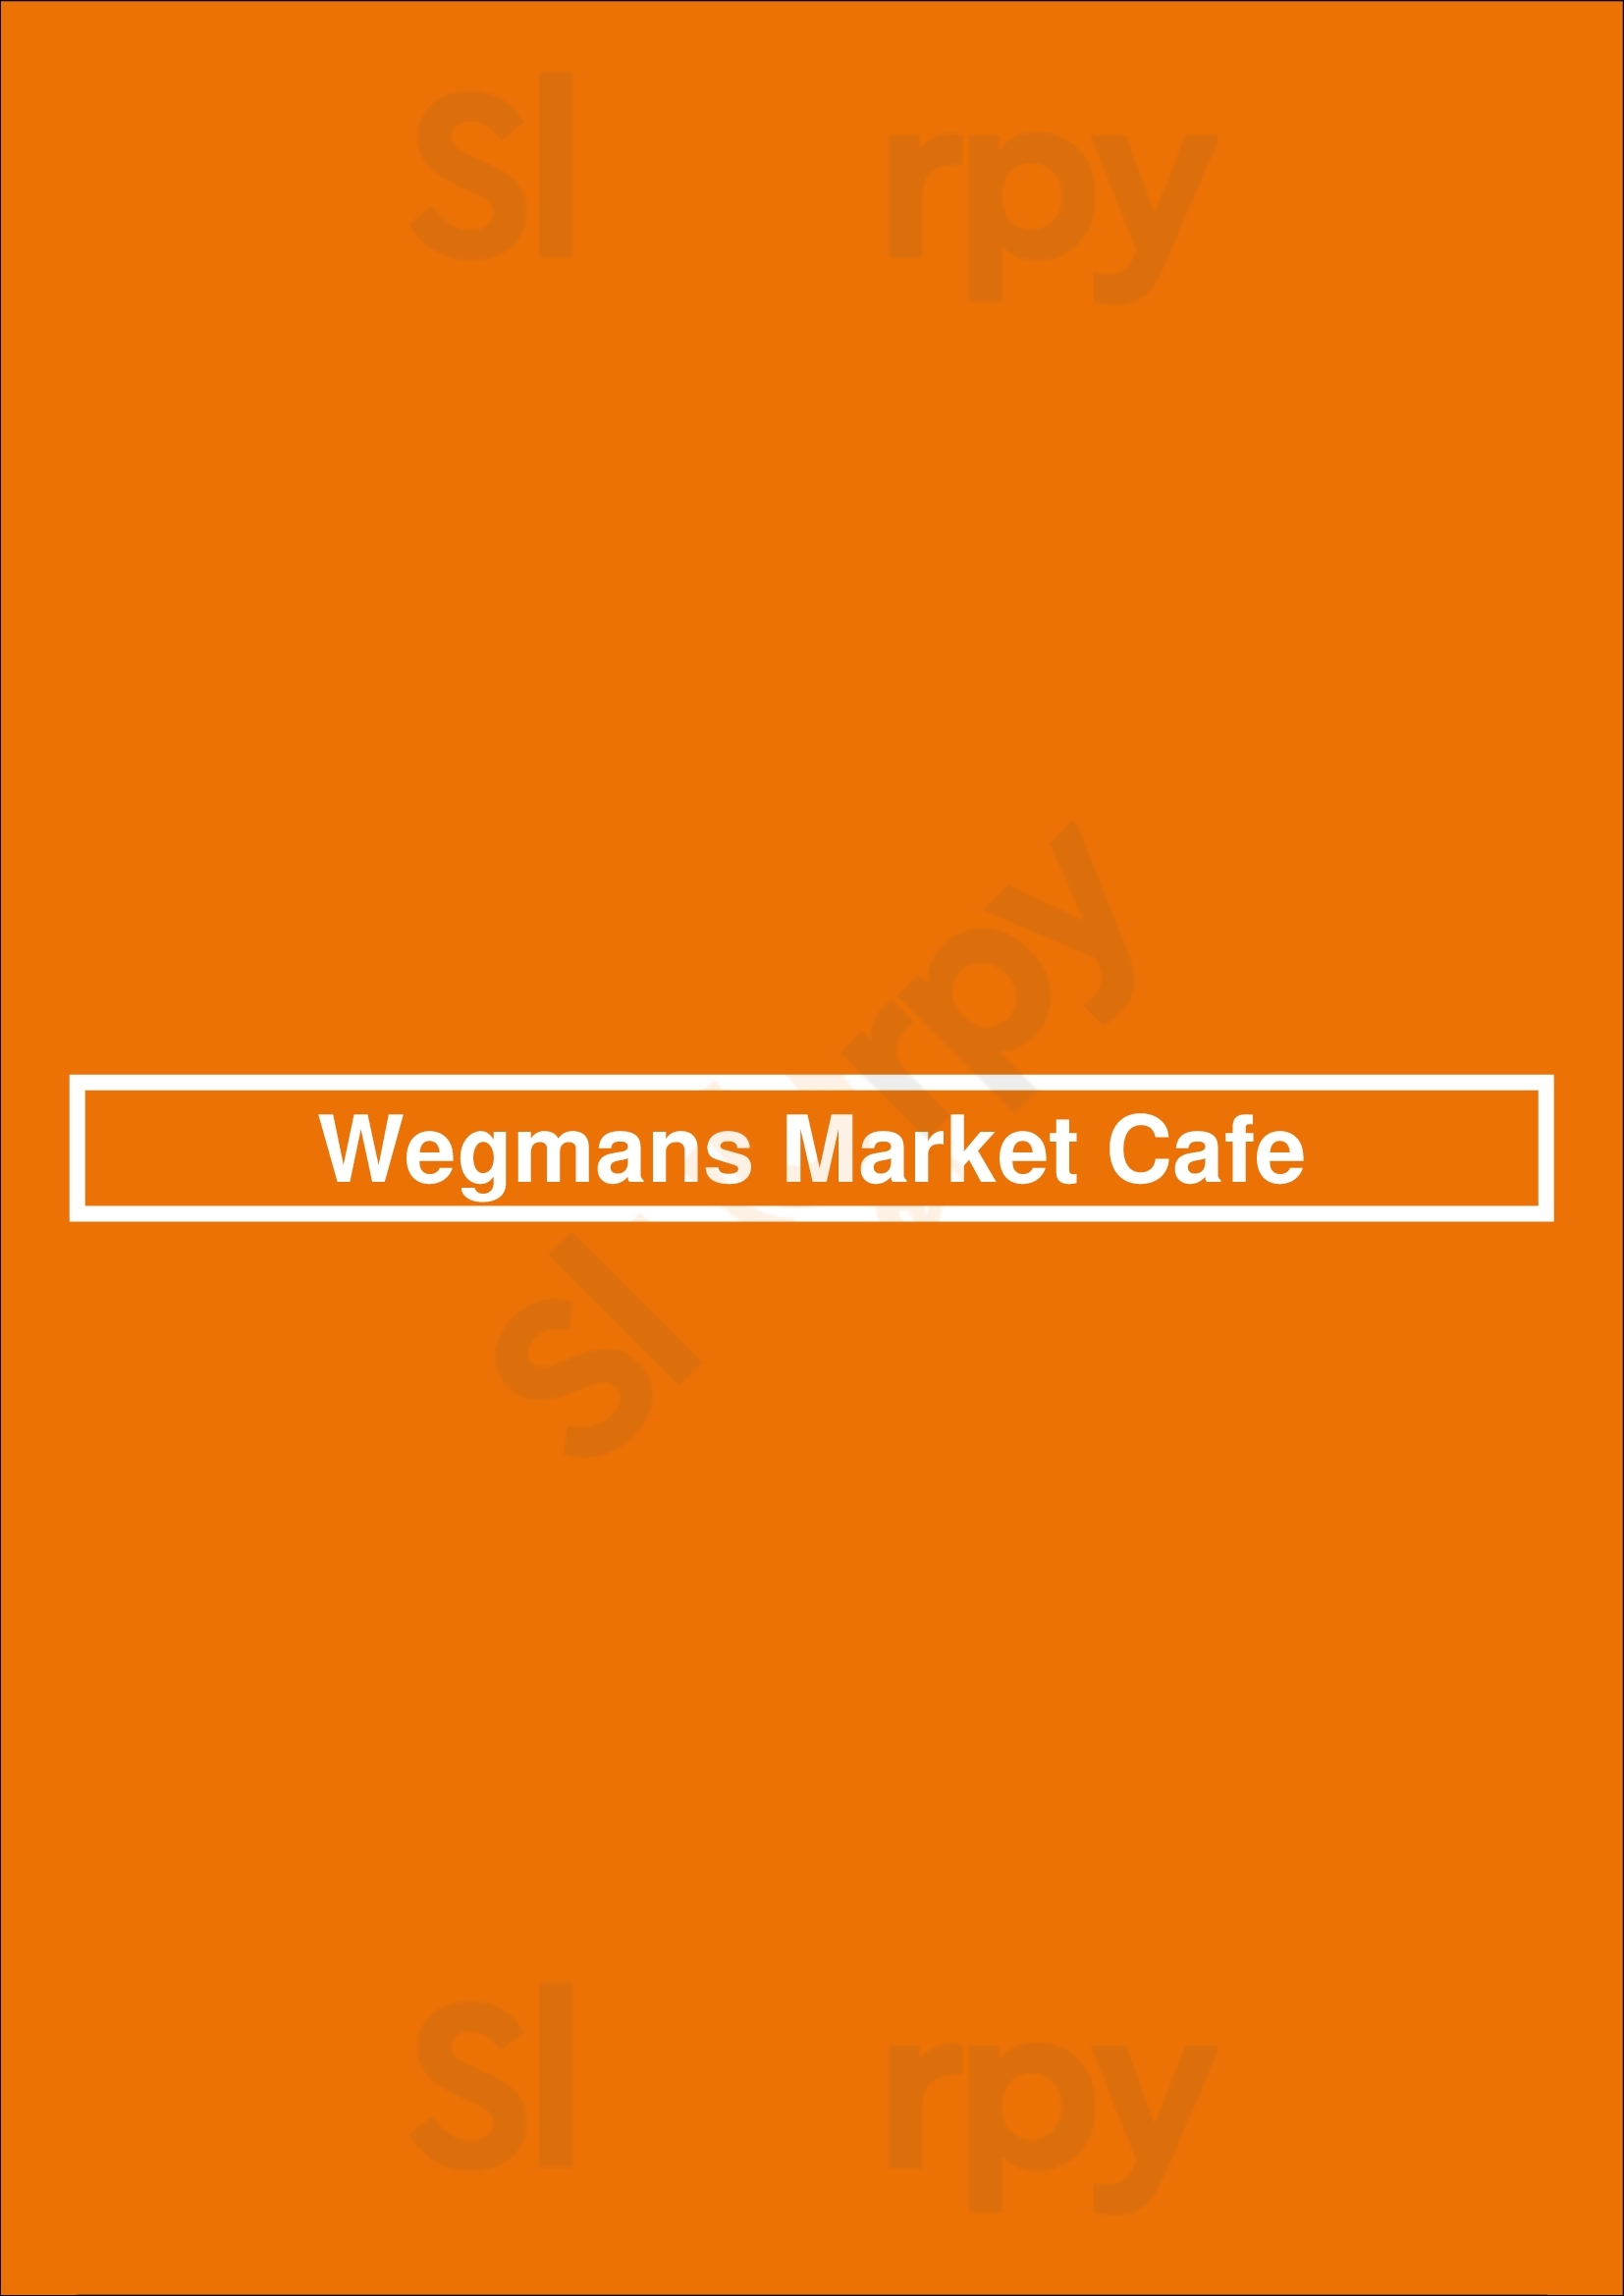 Wegmans Market Cafe Rochester Menu - 1